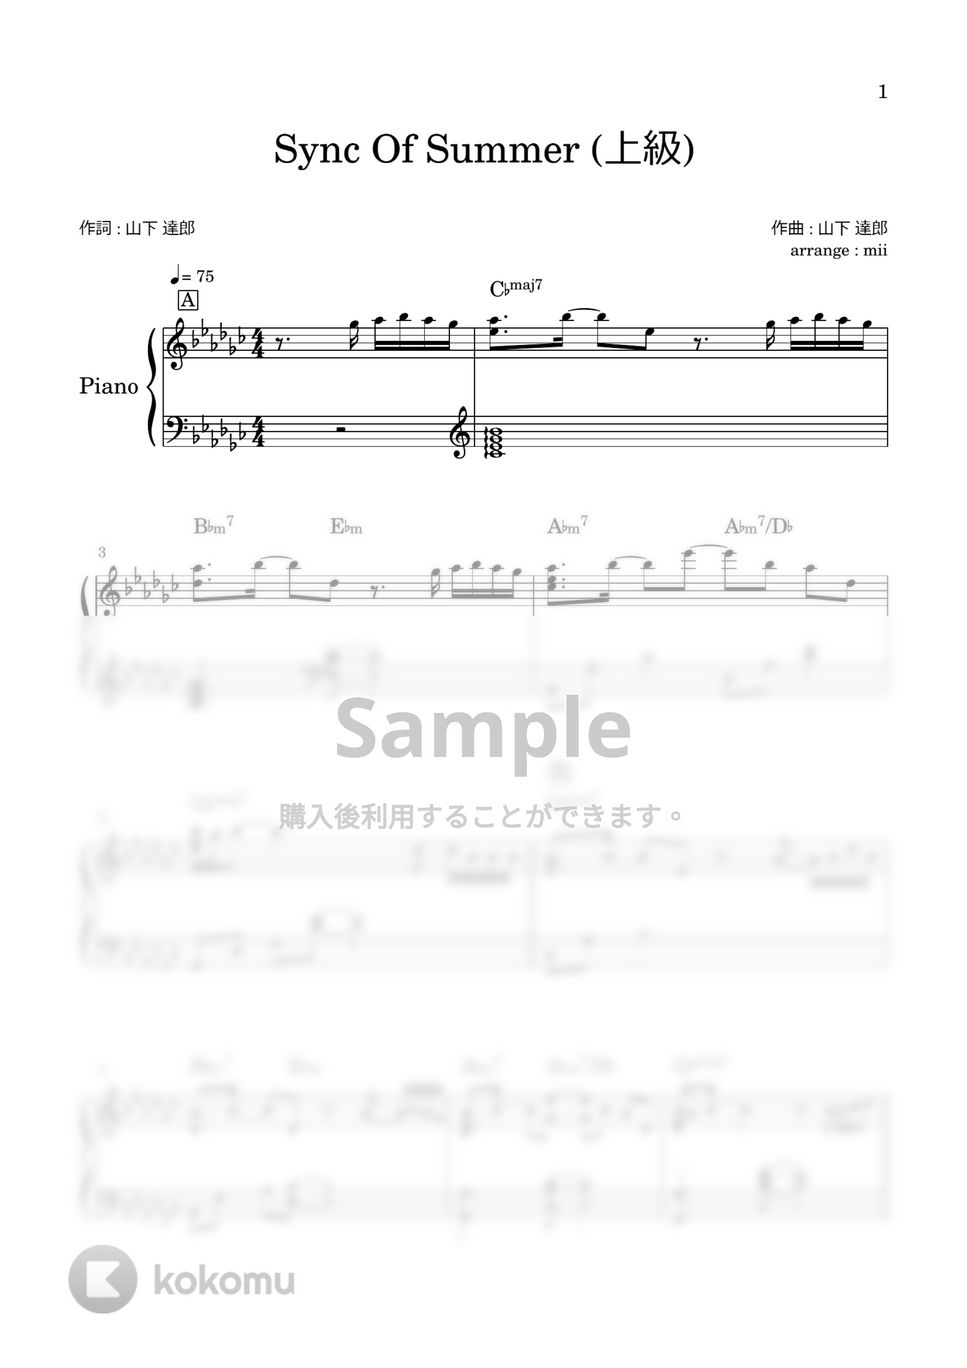 山下達郎 - Sync Of Summer (上級) by miiの楽譜棚